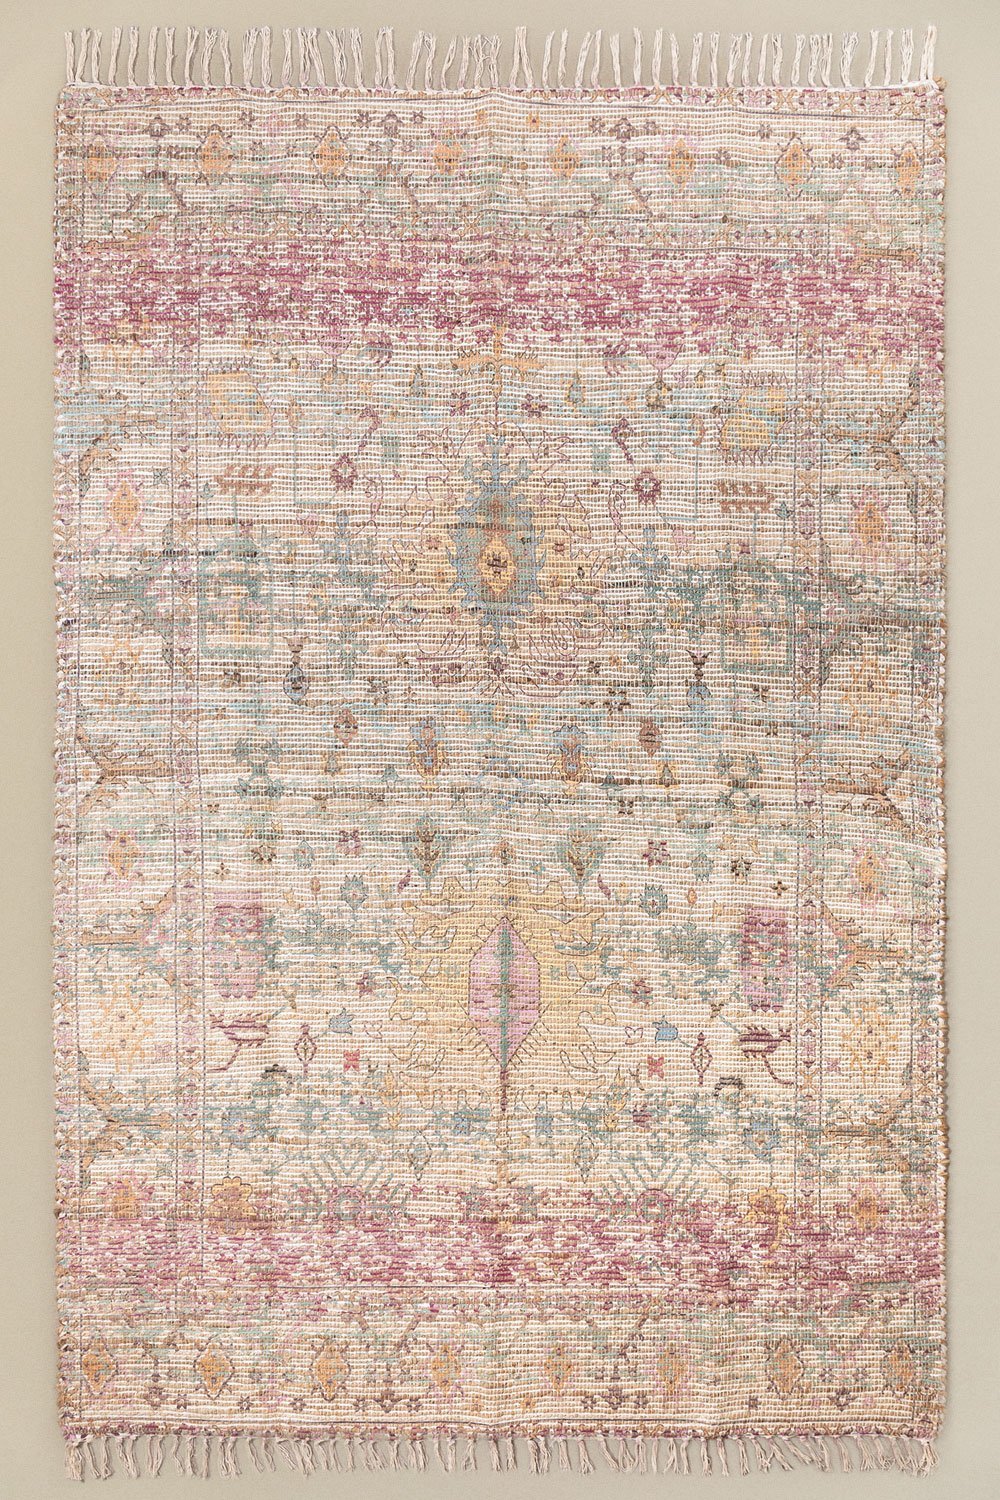 Tappeto in iuta e tessuto (260x170 cm) Demir, immagine della galleria 1